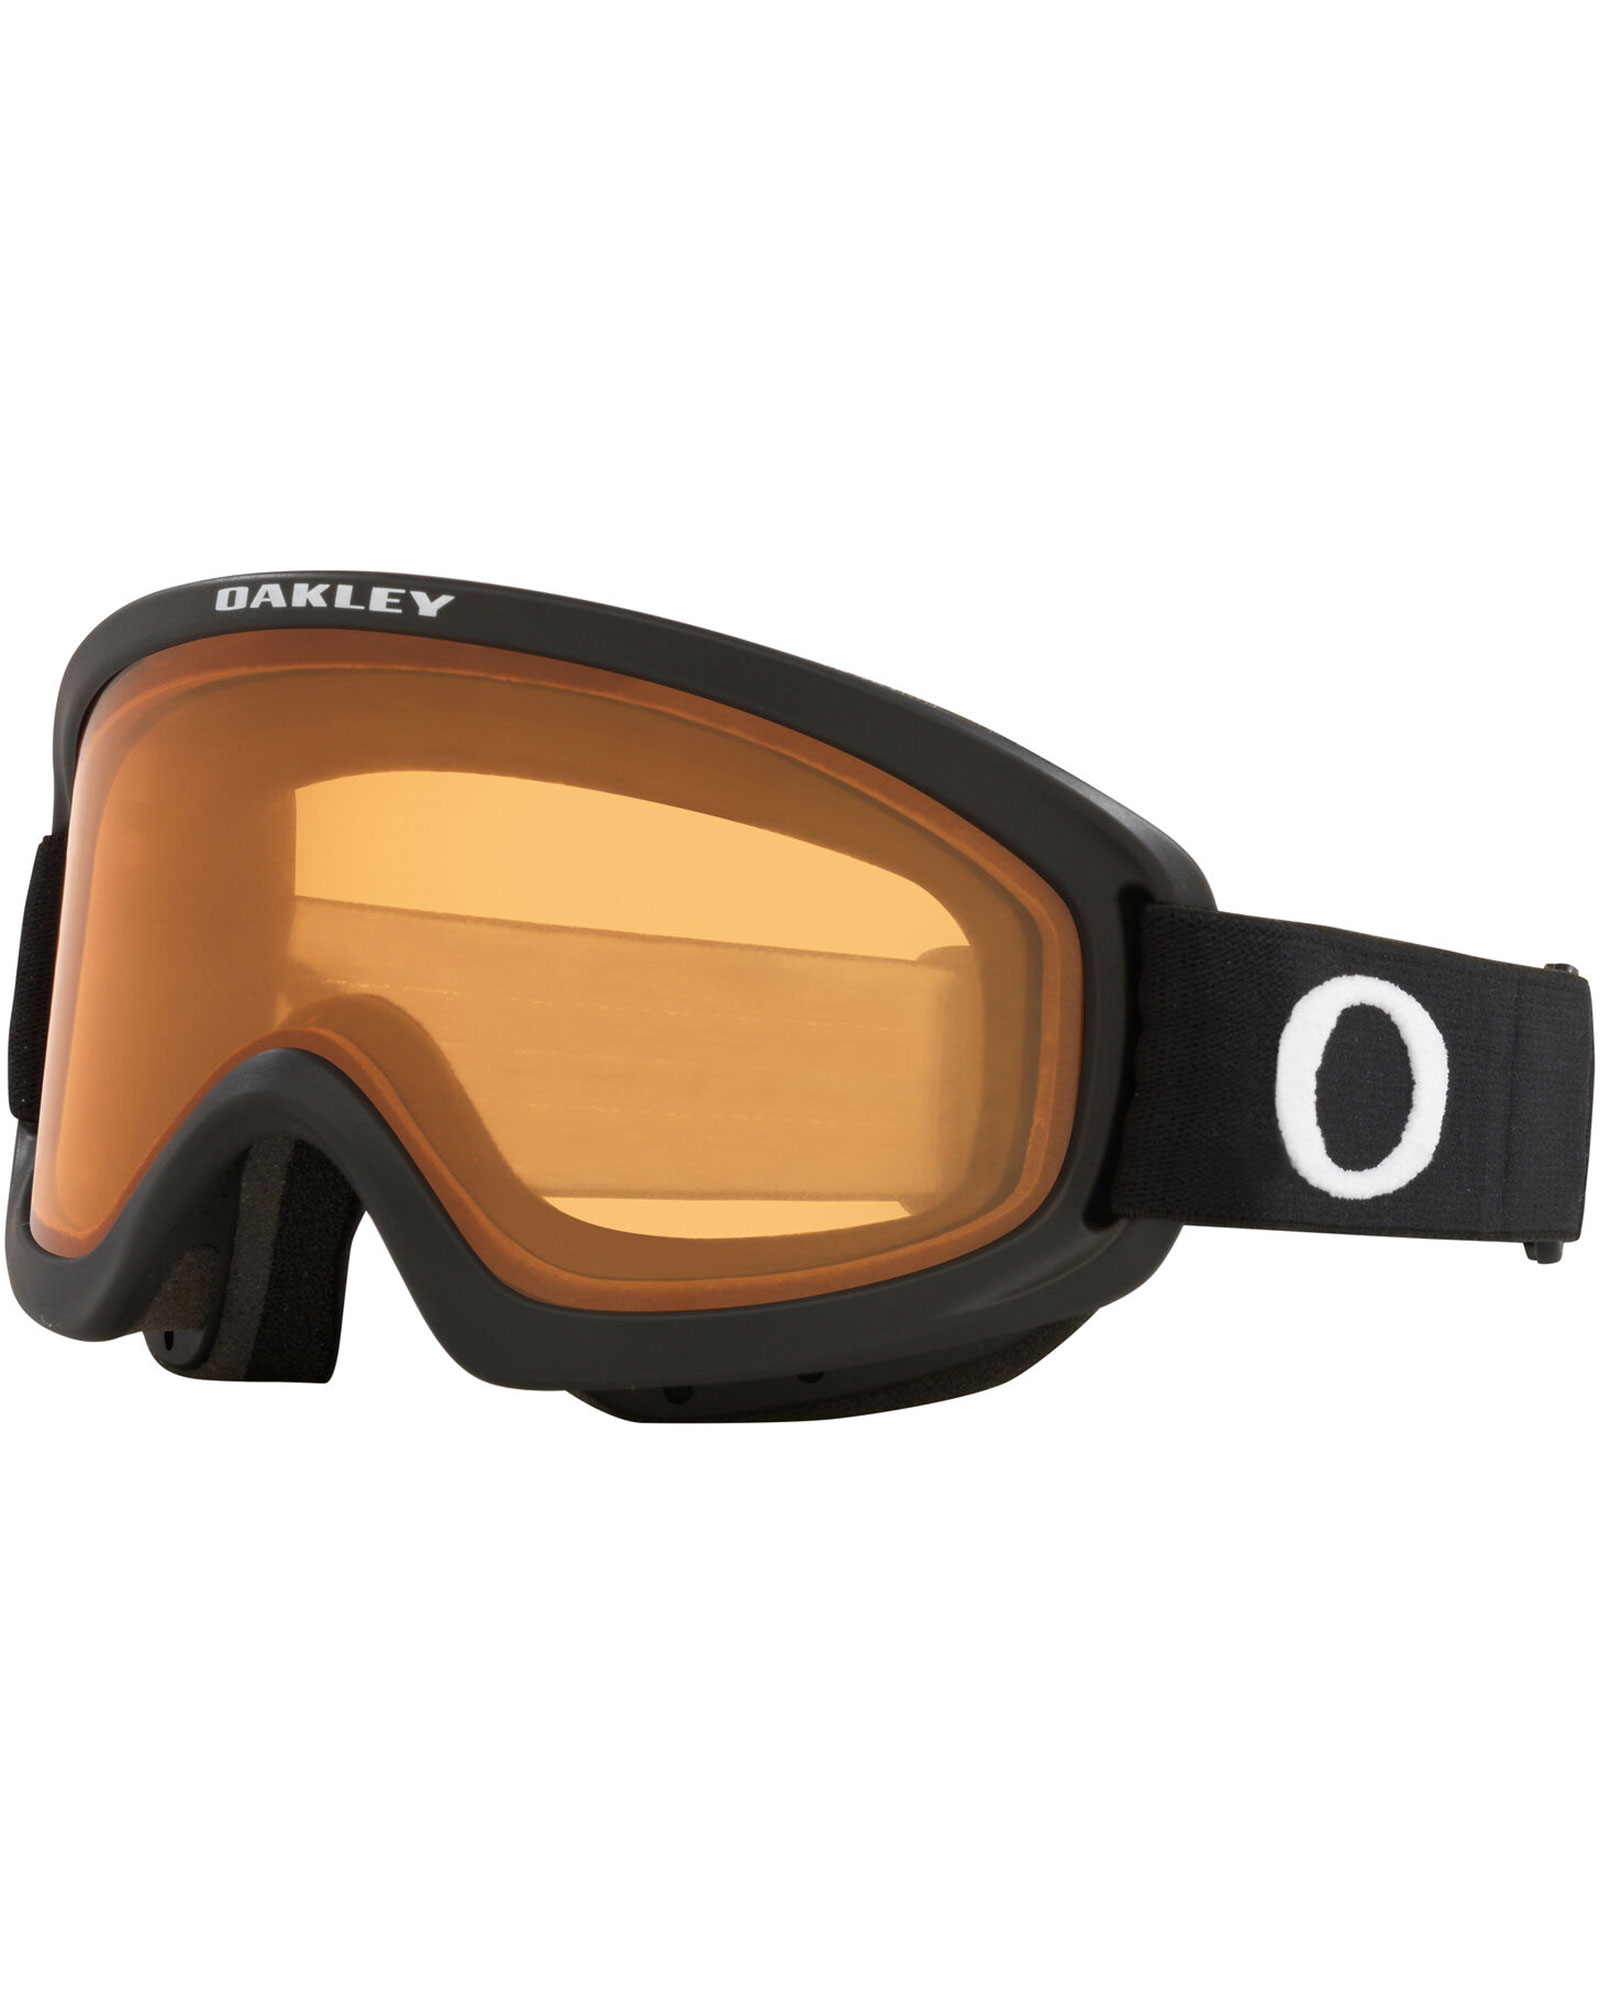 Oakley O Frame 2.0 Pro S Matte Black / Persimmon Goggles - Matte Black